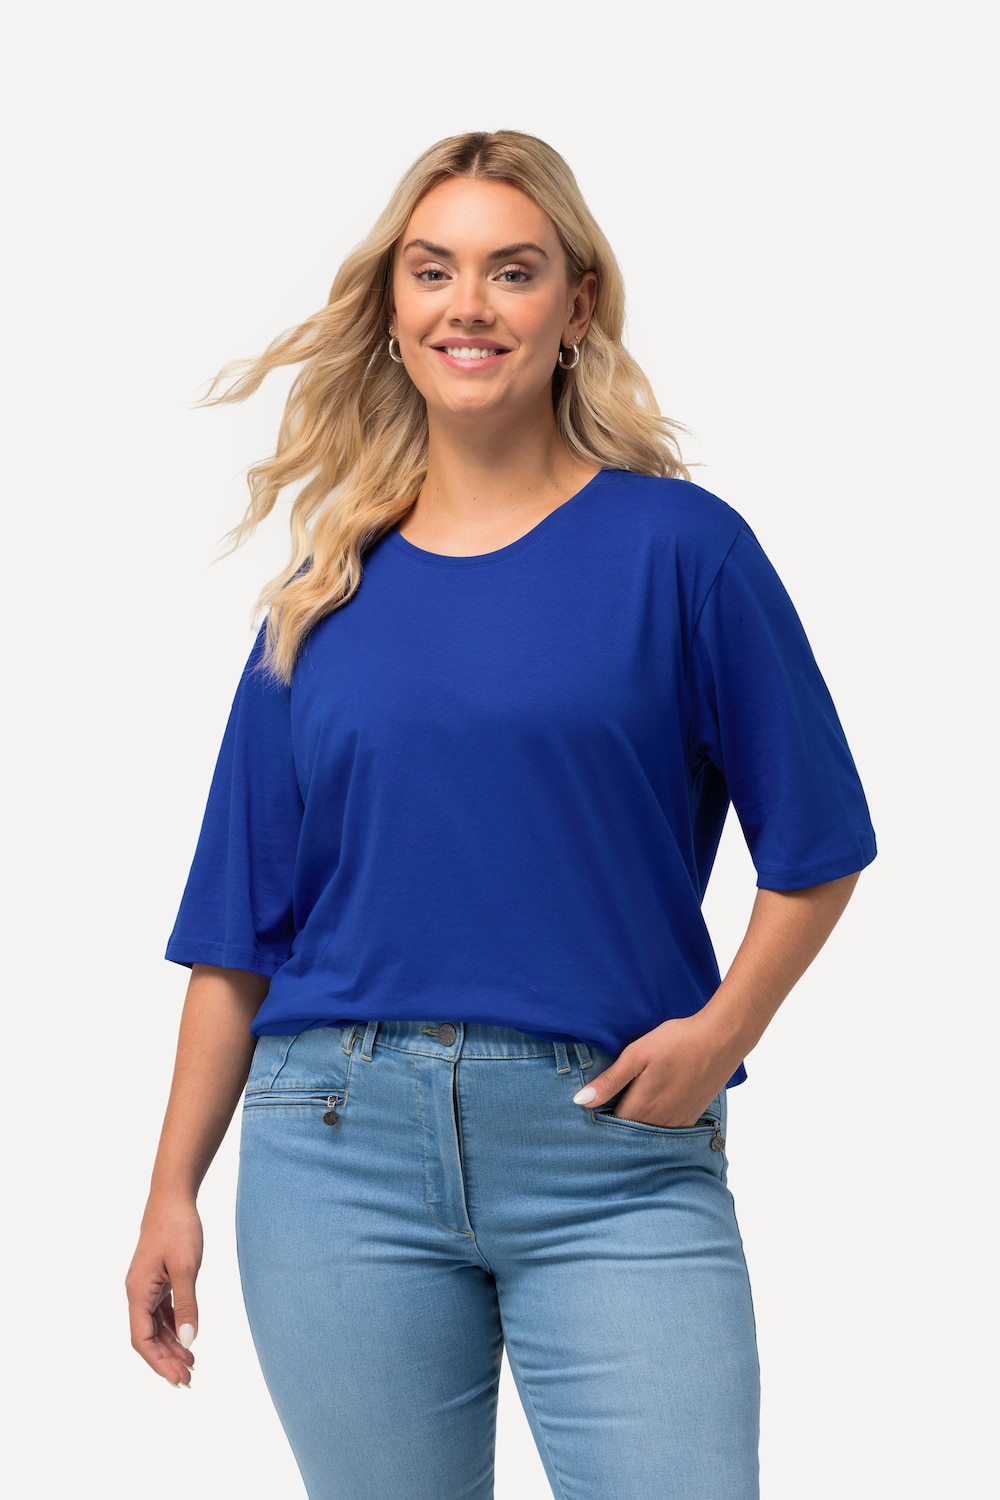 Grote Maten T-Shirt, Dames, blauw, Maat: 62/64, Katoen/Viscose, Ulla Popken